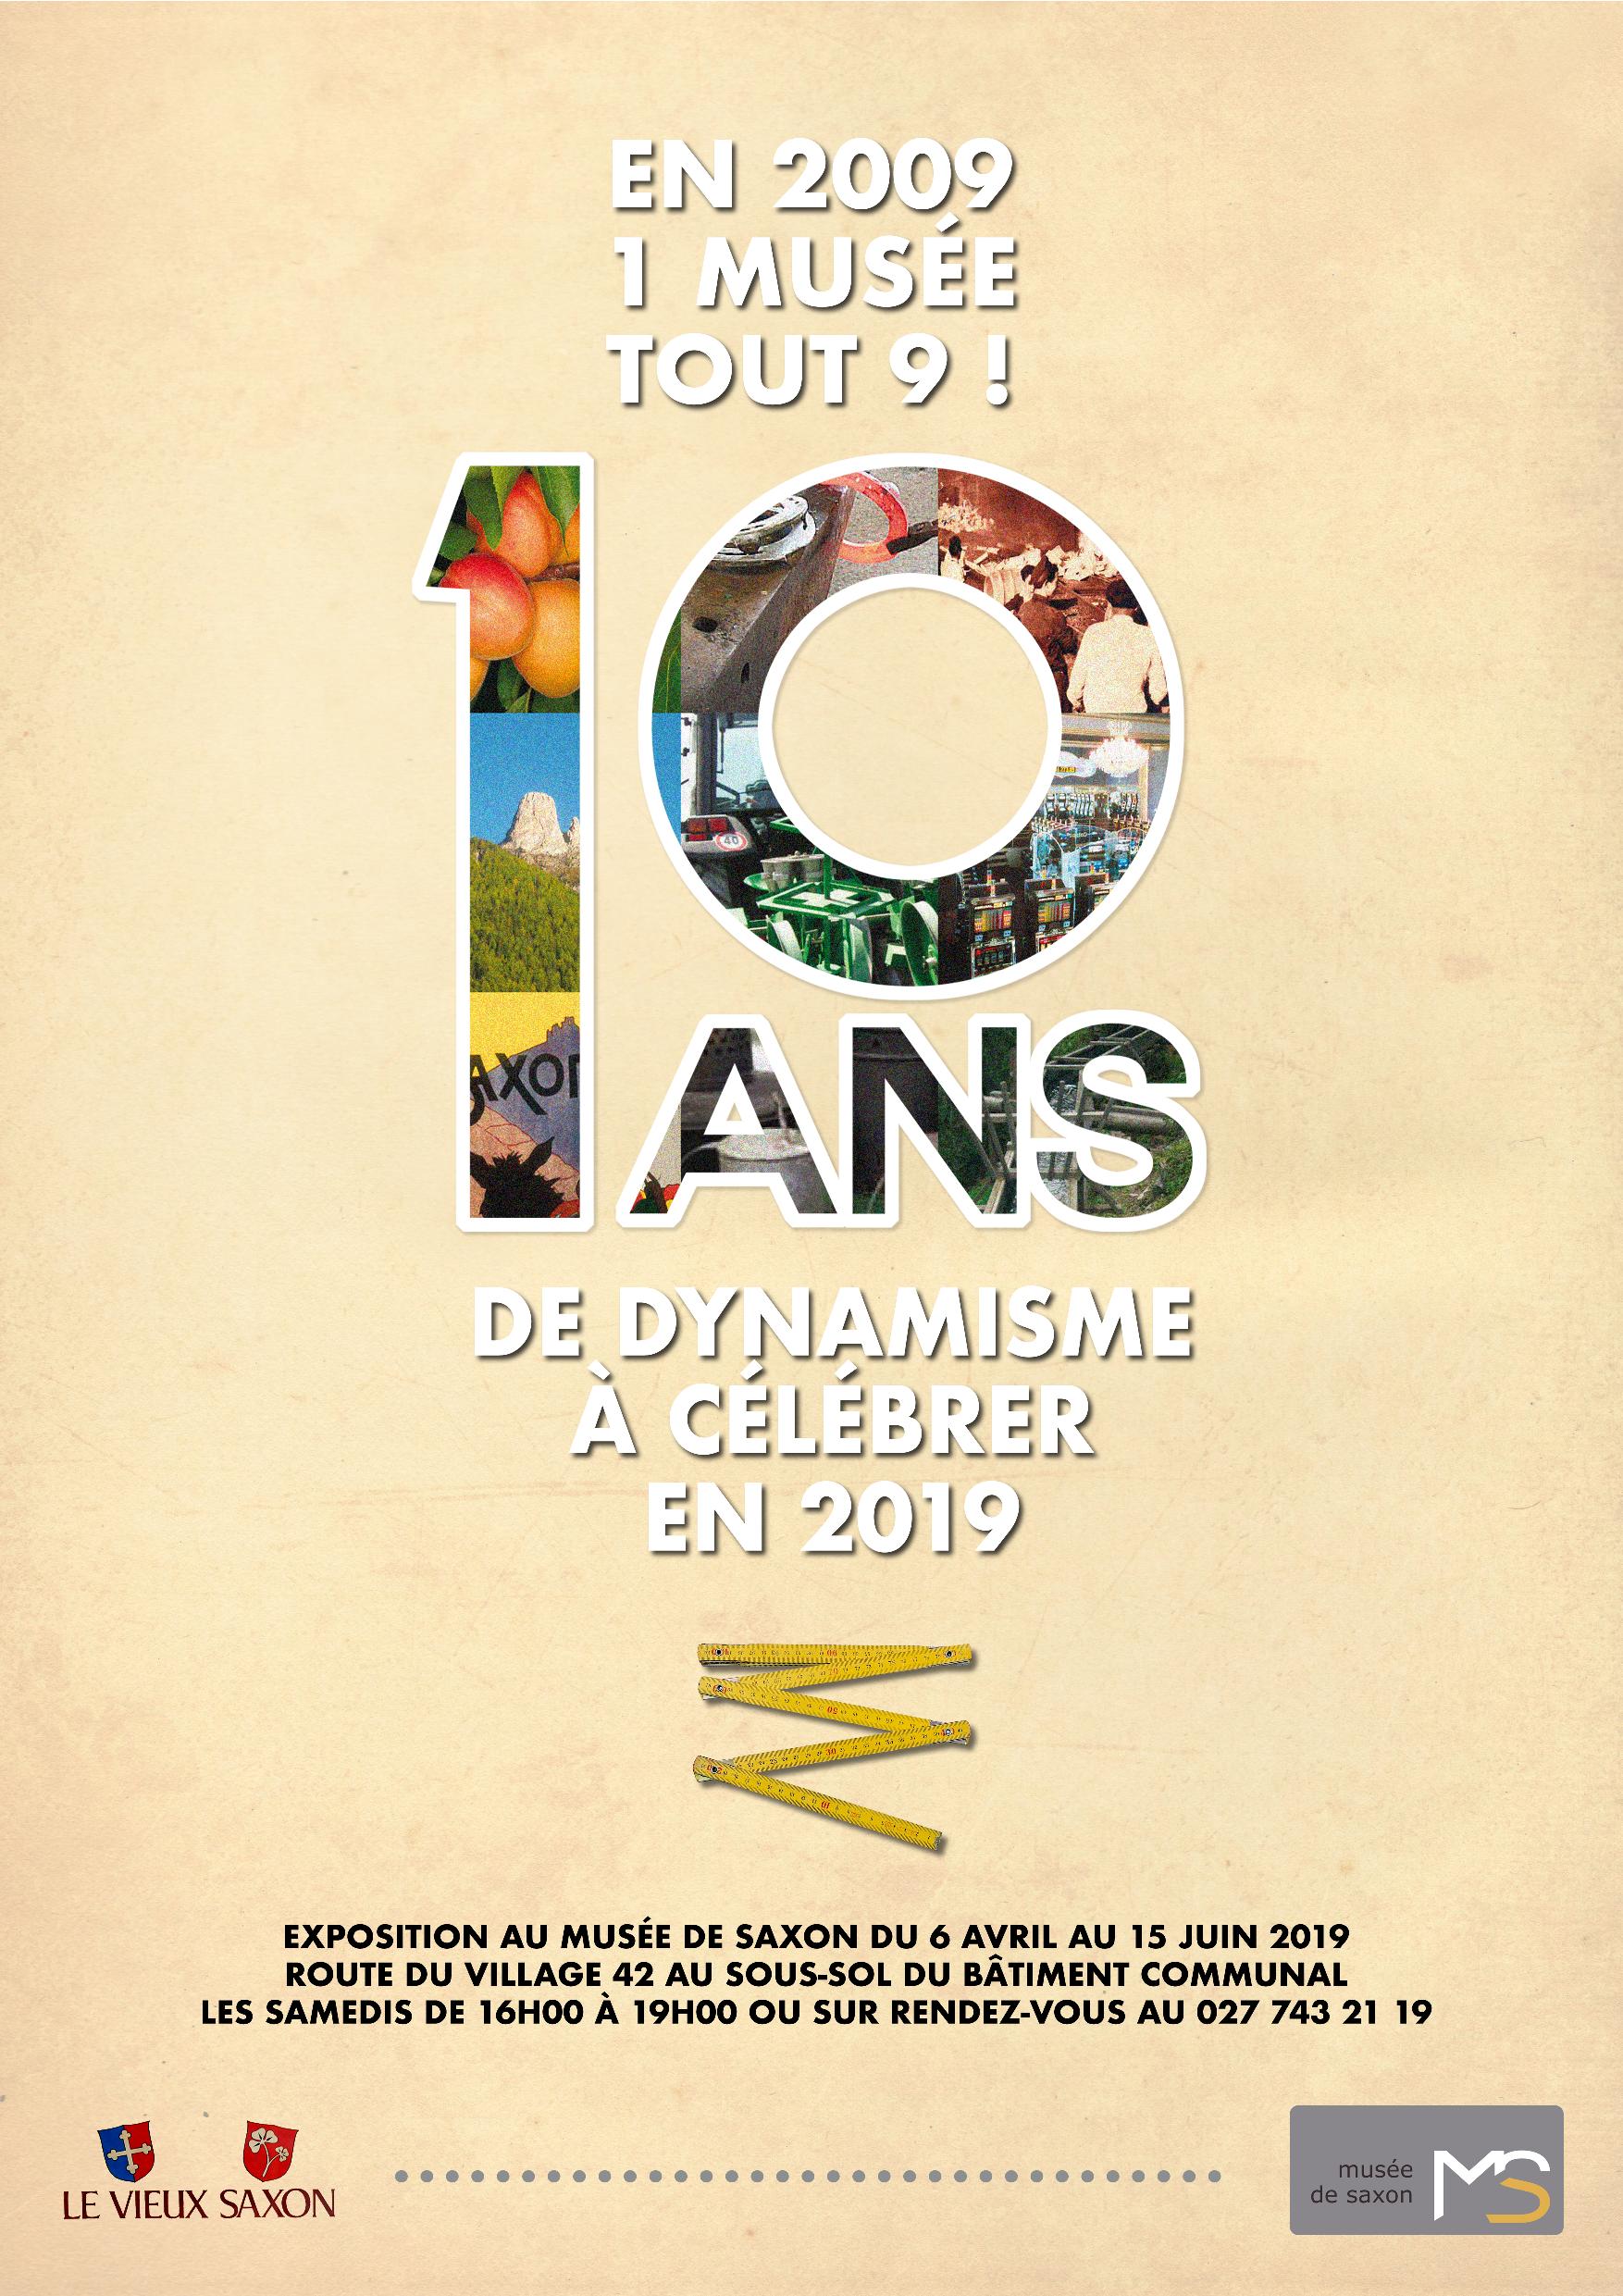 En 2009 un Musée tout 9! 10 ans de dynamisme à célébrer en 2019!